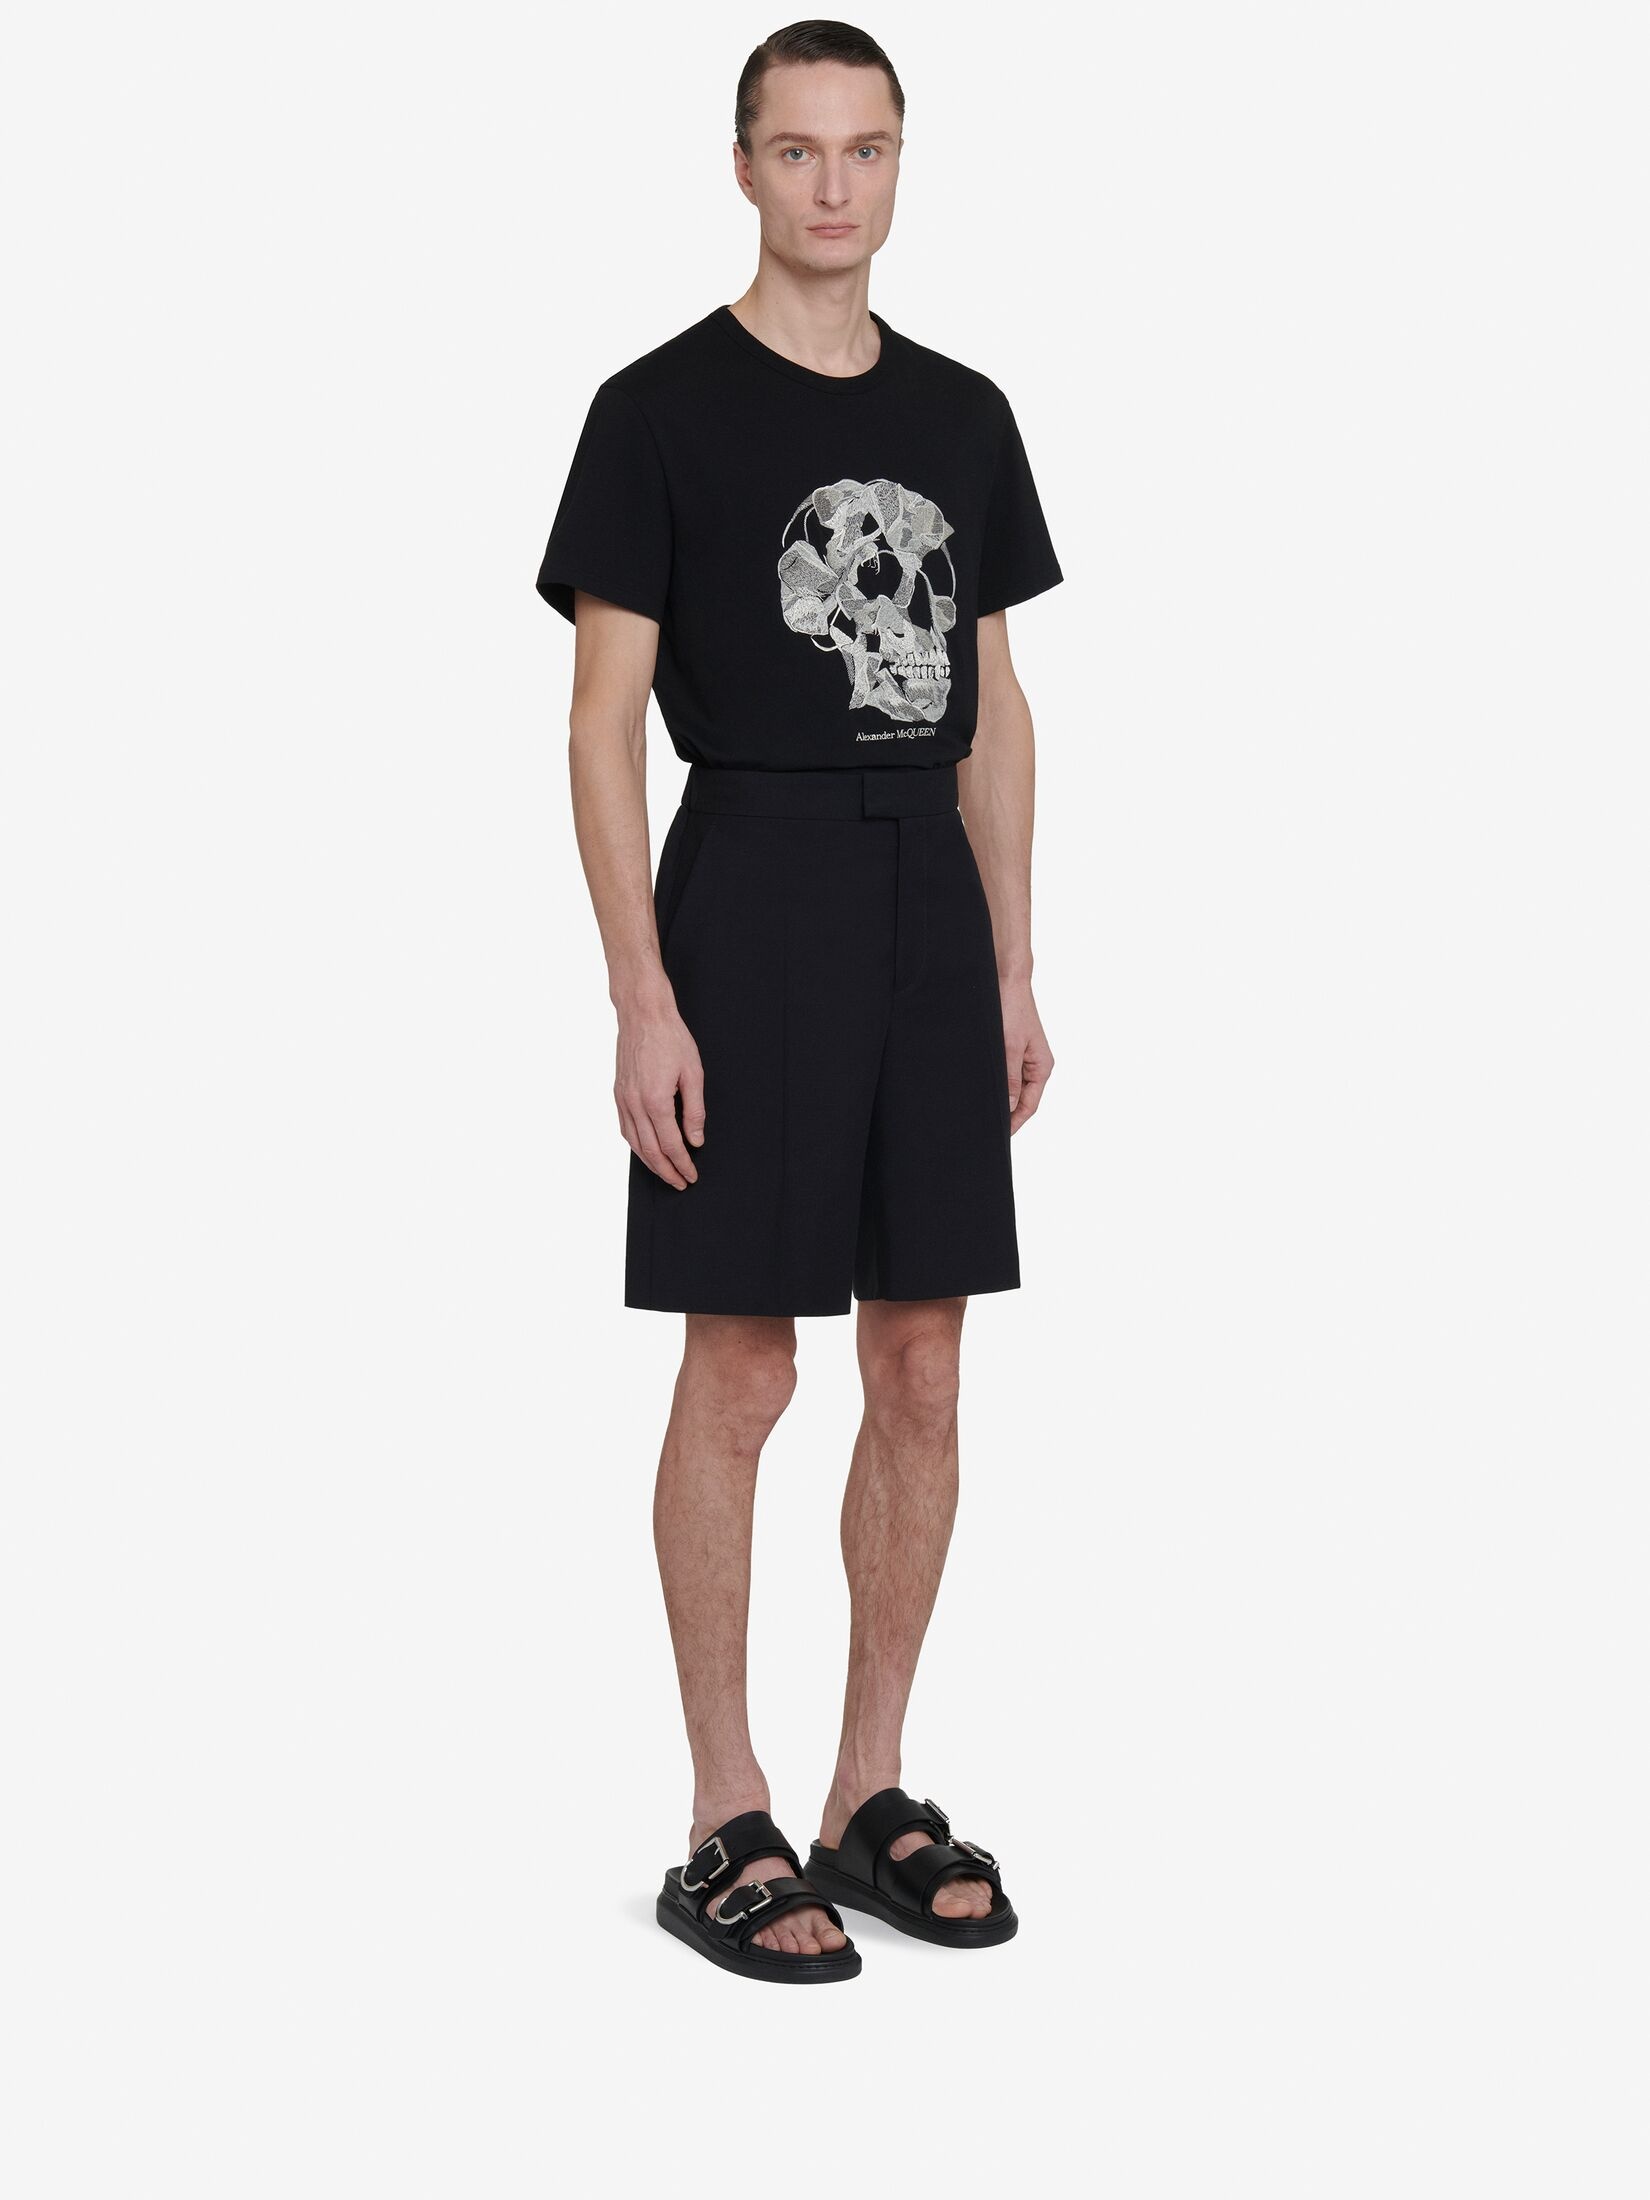 Men's Pressed Flower Skull T-shirt in Black - 3